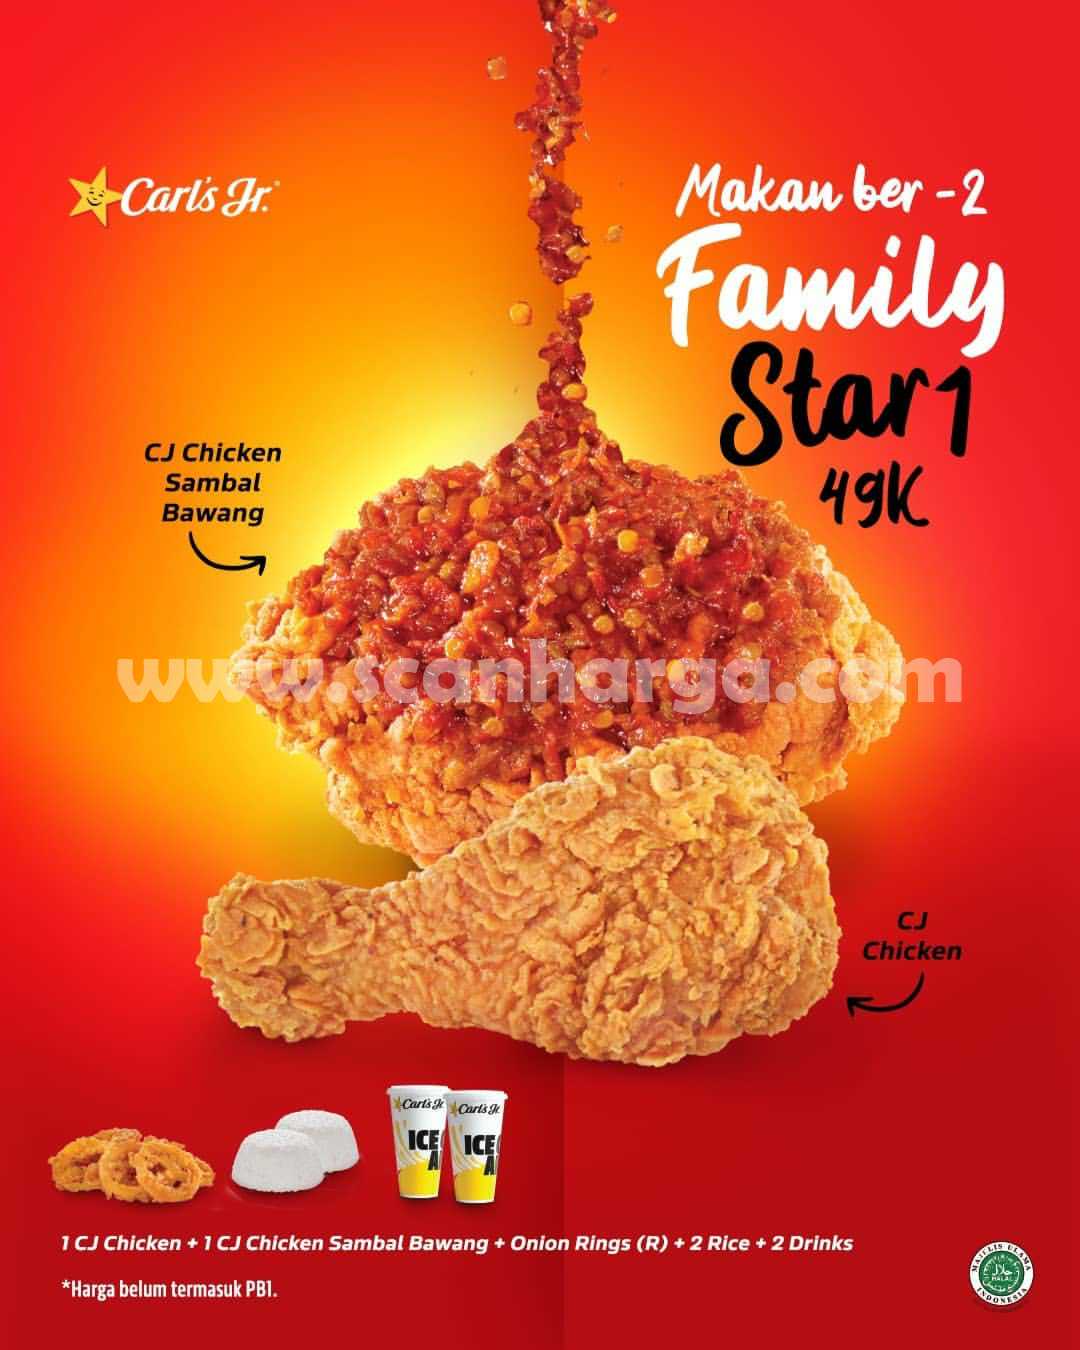 CARLS JR Promo FAMILY STAR 1 - Makan Ber-2 Cuma Rp. 45rb